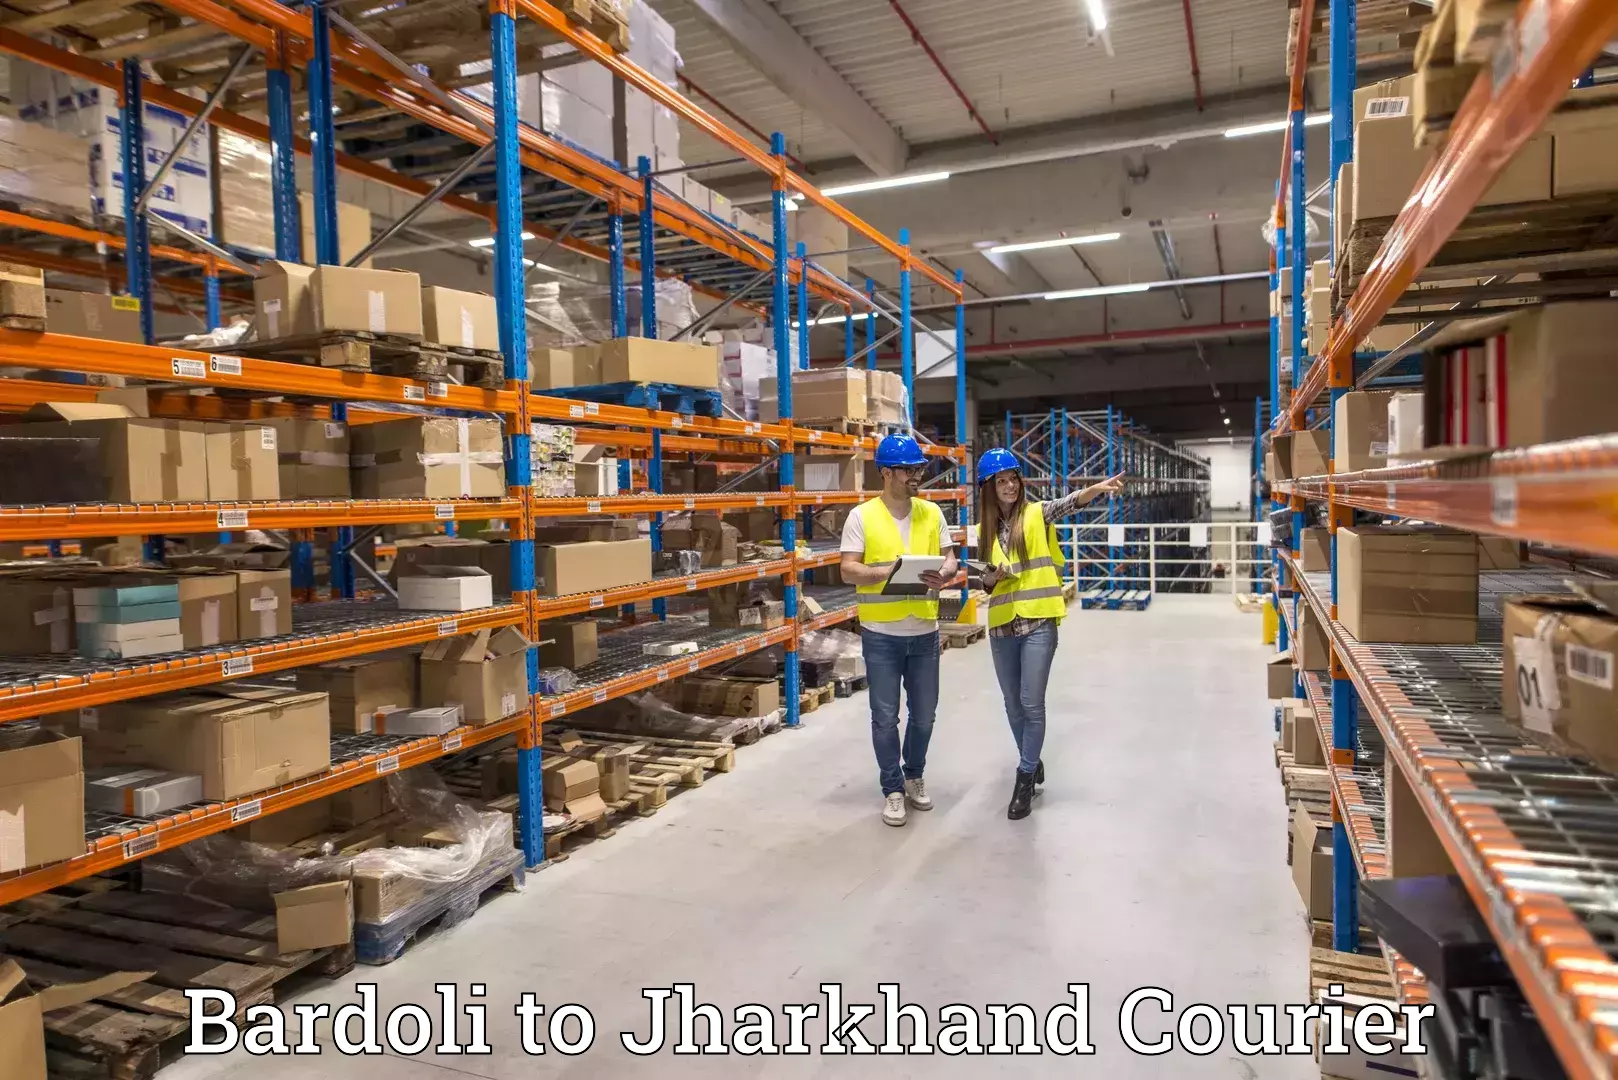 24-hour courier service Bardoli to Jharkhand